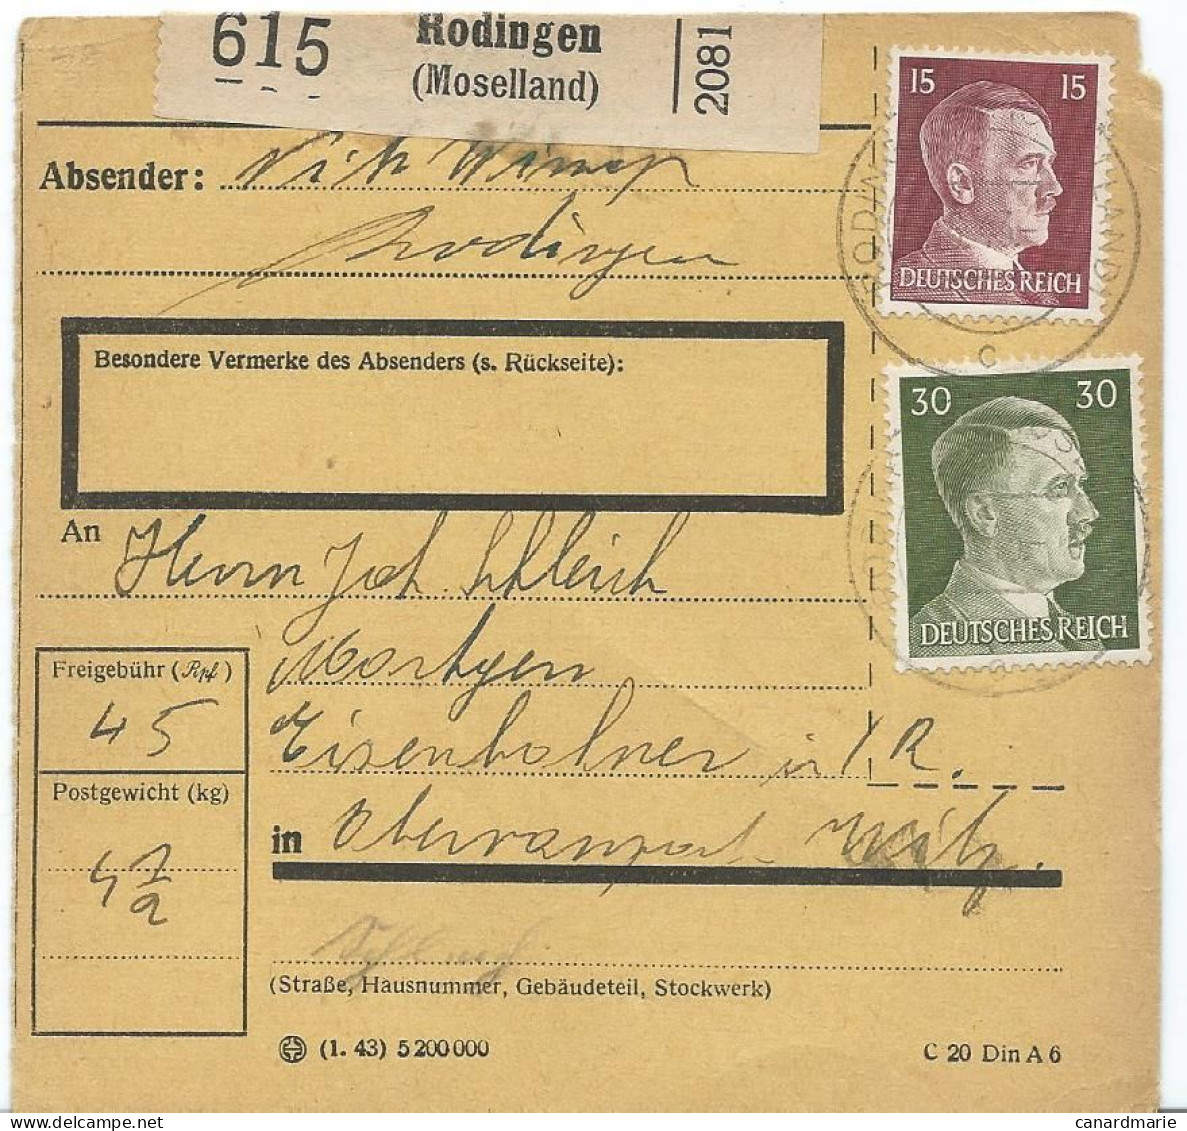 BULLETIN DE COLIS POSTAL 1943 AVEC ETIQUETTE DE RODINGEN (MOSELLAND) - 1940-1944 Duitse Bezetting